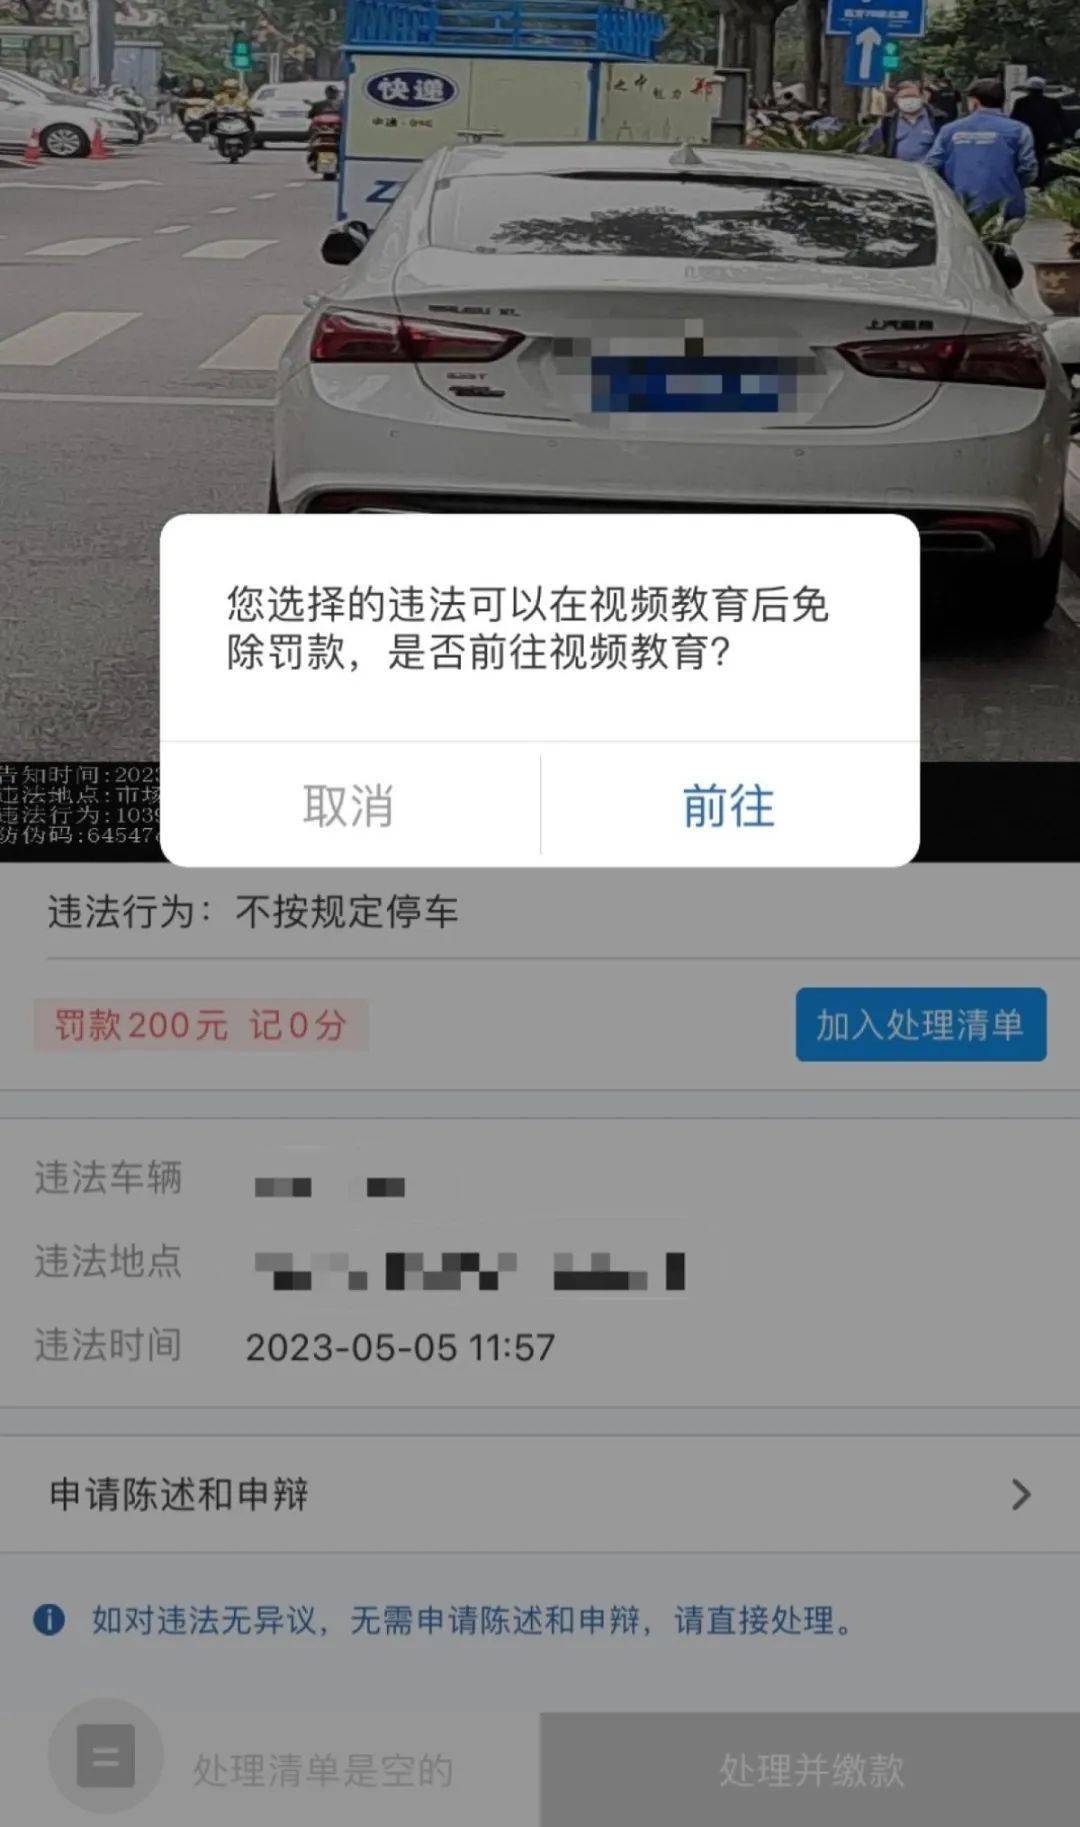 河南车友注意了!交管12123上处理3分以下违法不记分的政策取消了_凤凰网视频_凤凰网